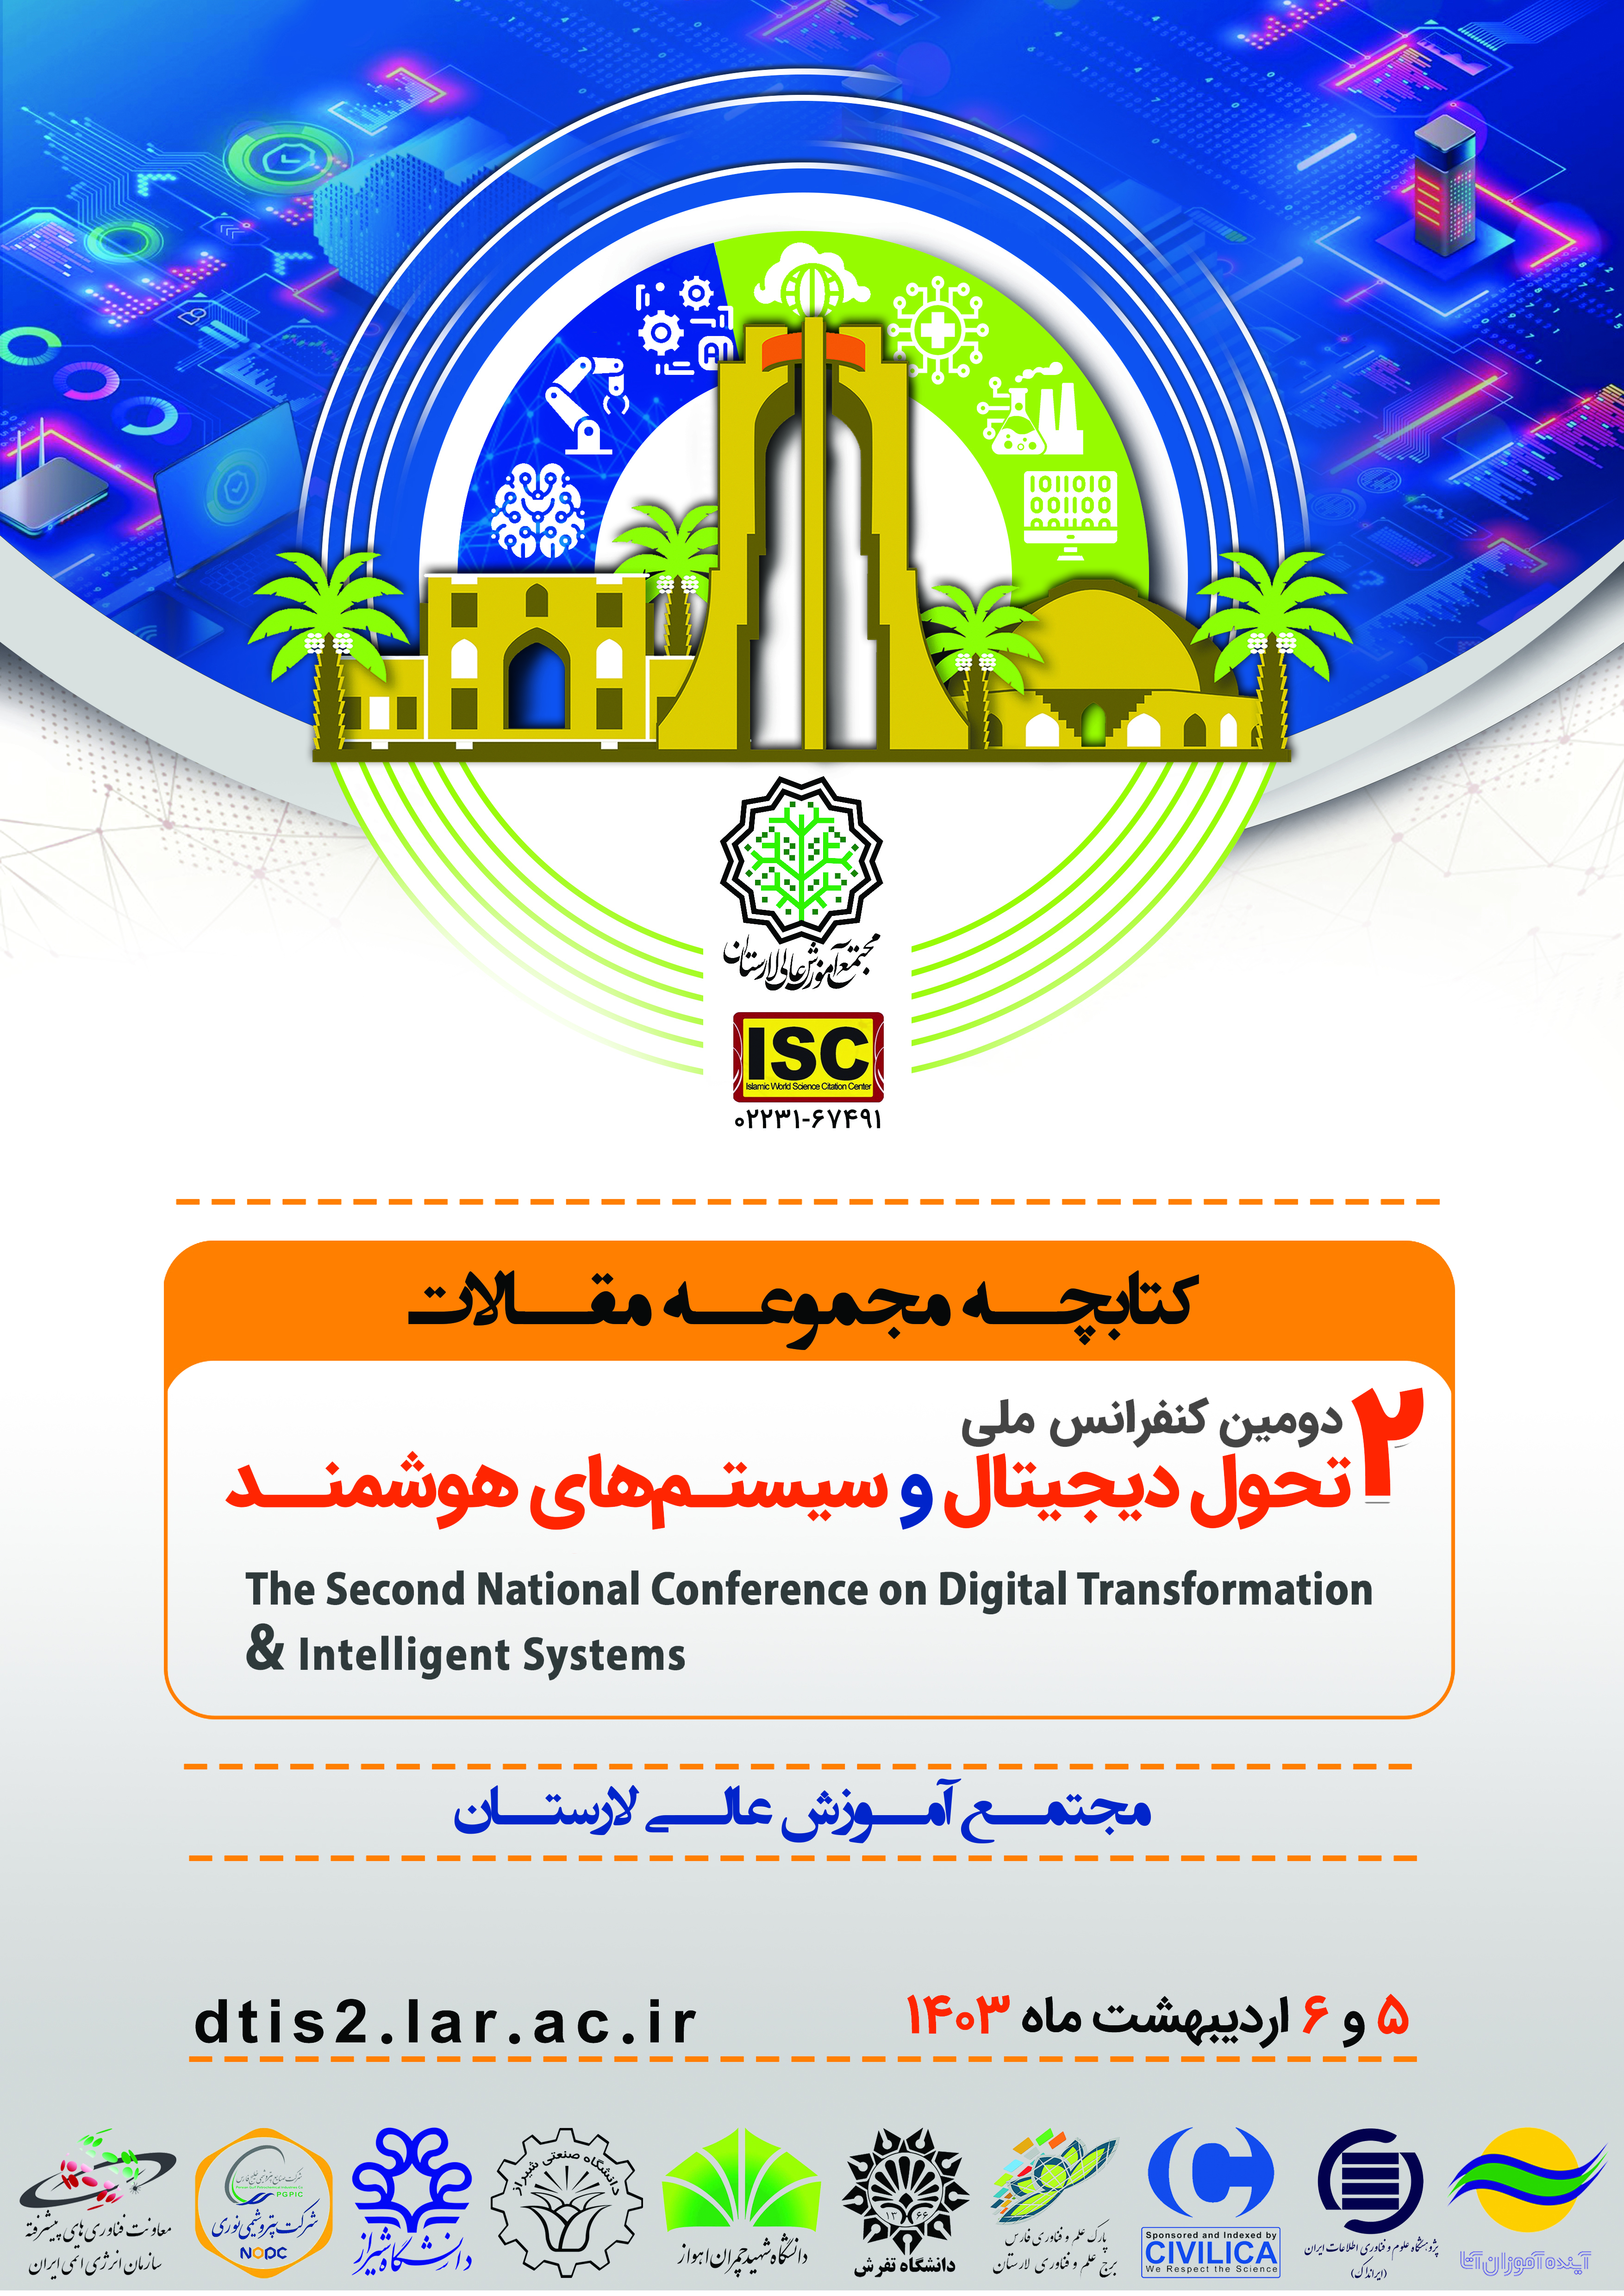 کتابچه دومین کنفرانس ملی تحول دیجیتال و سیستم های هوشمند